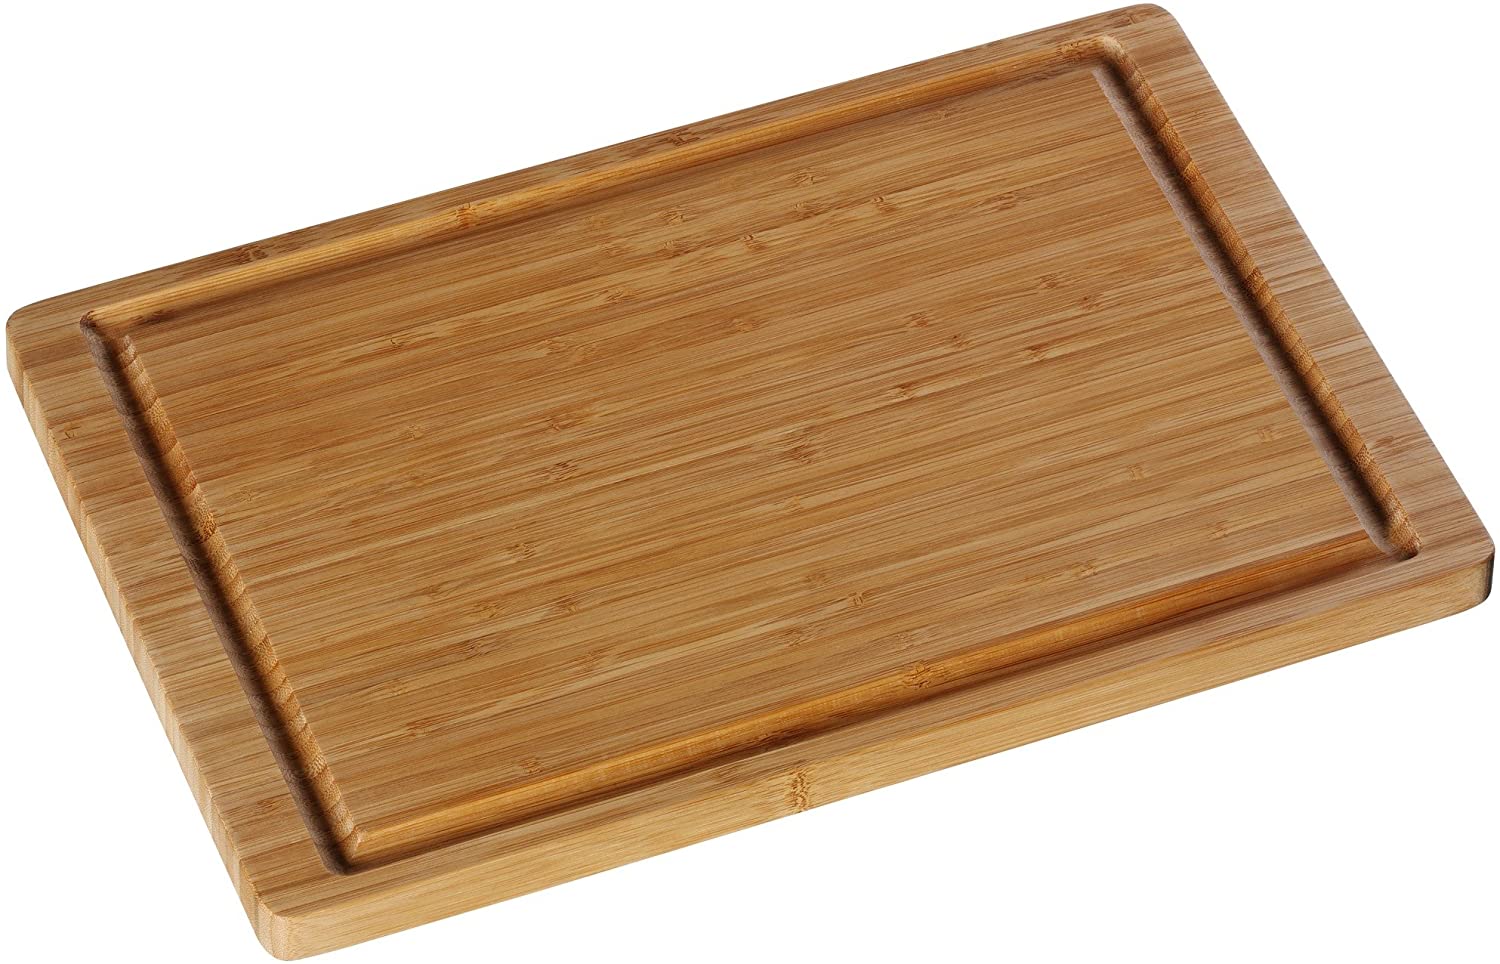 WMF 1886879990 Chopping Board Bamboo 38 x 25 cm